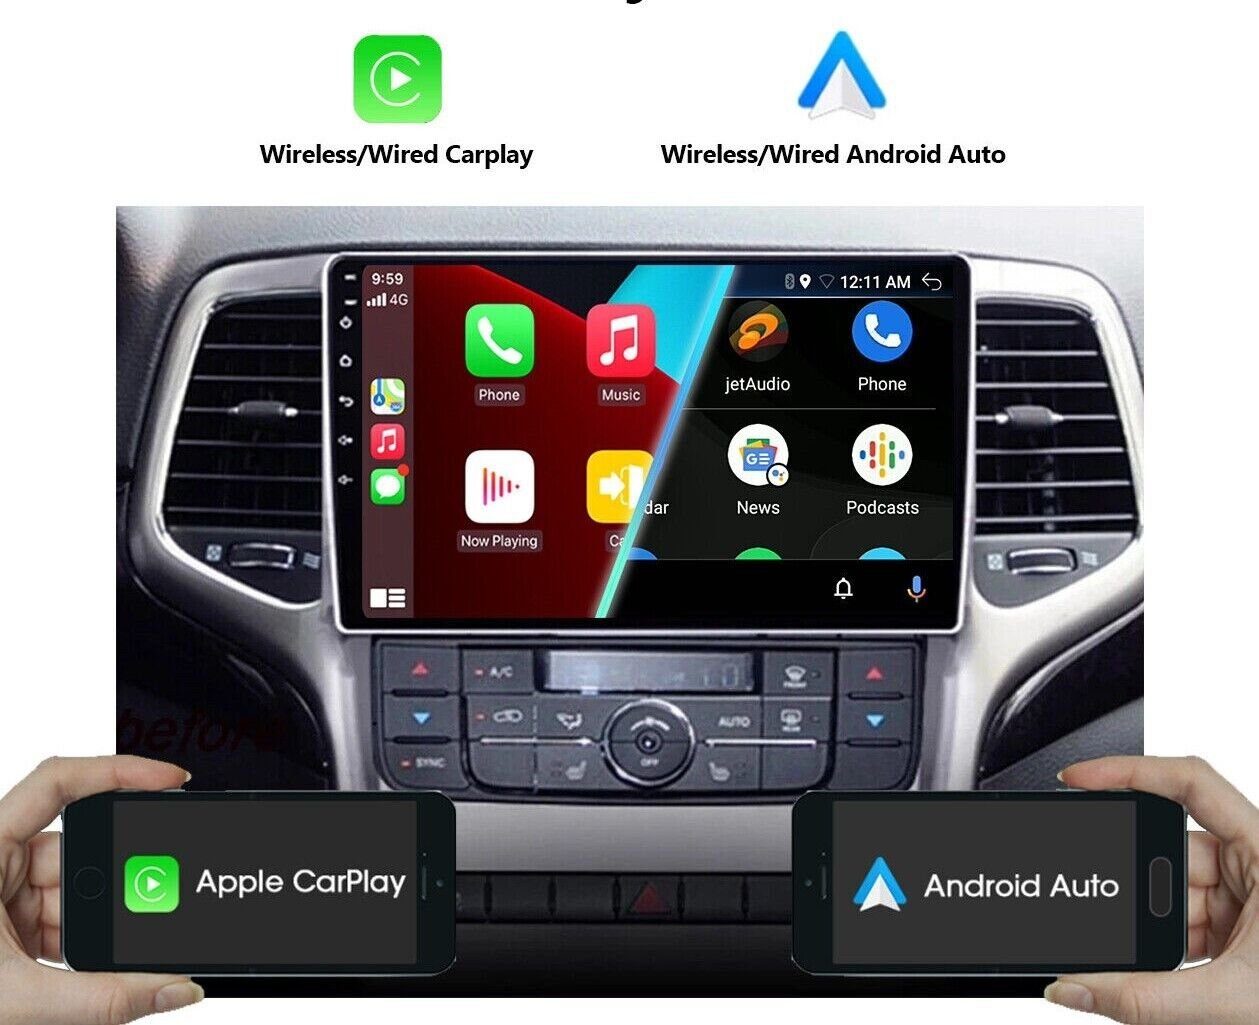 2008-2013 9" Autoradio Einbau-Navigationsgerät Cherokee BT Carplay Jeep Android FM Für GABITECH Grand